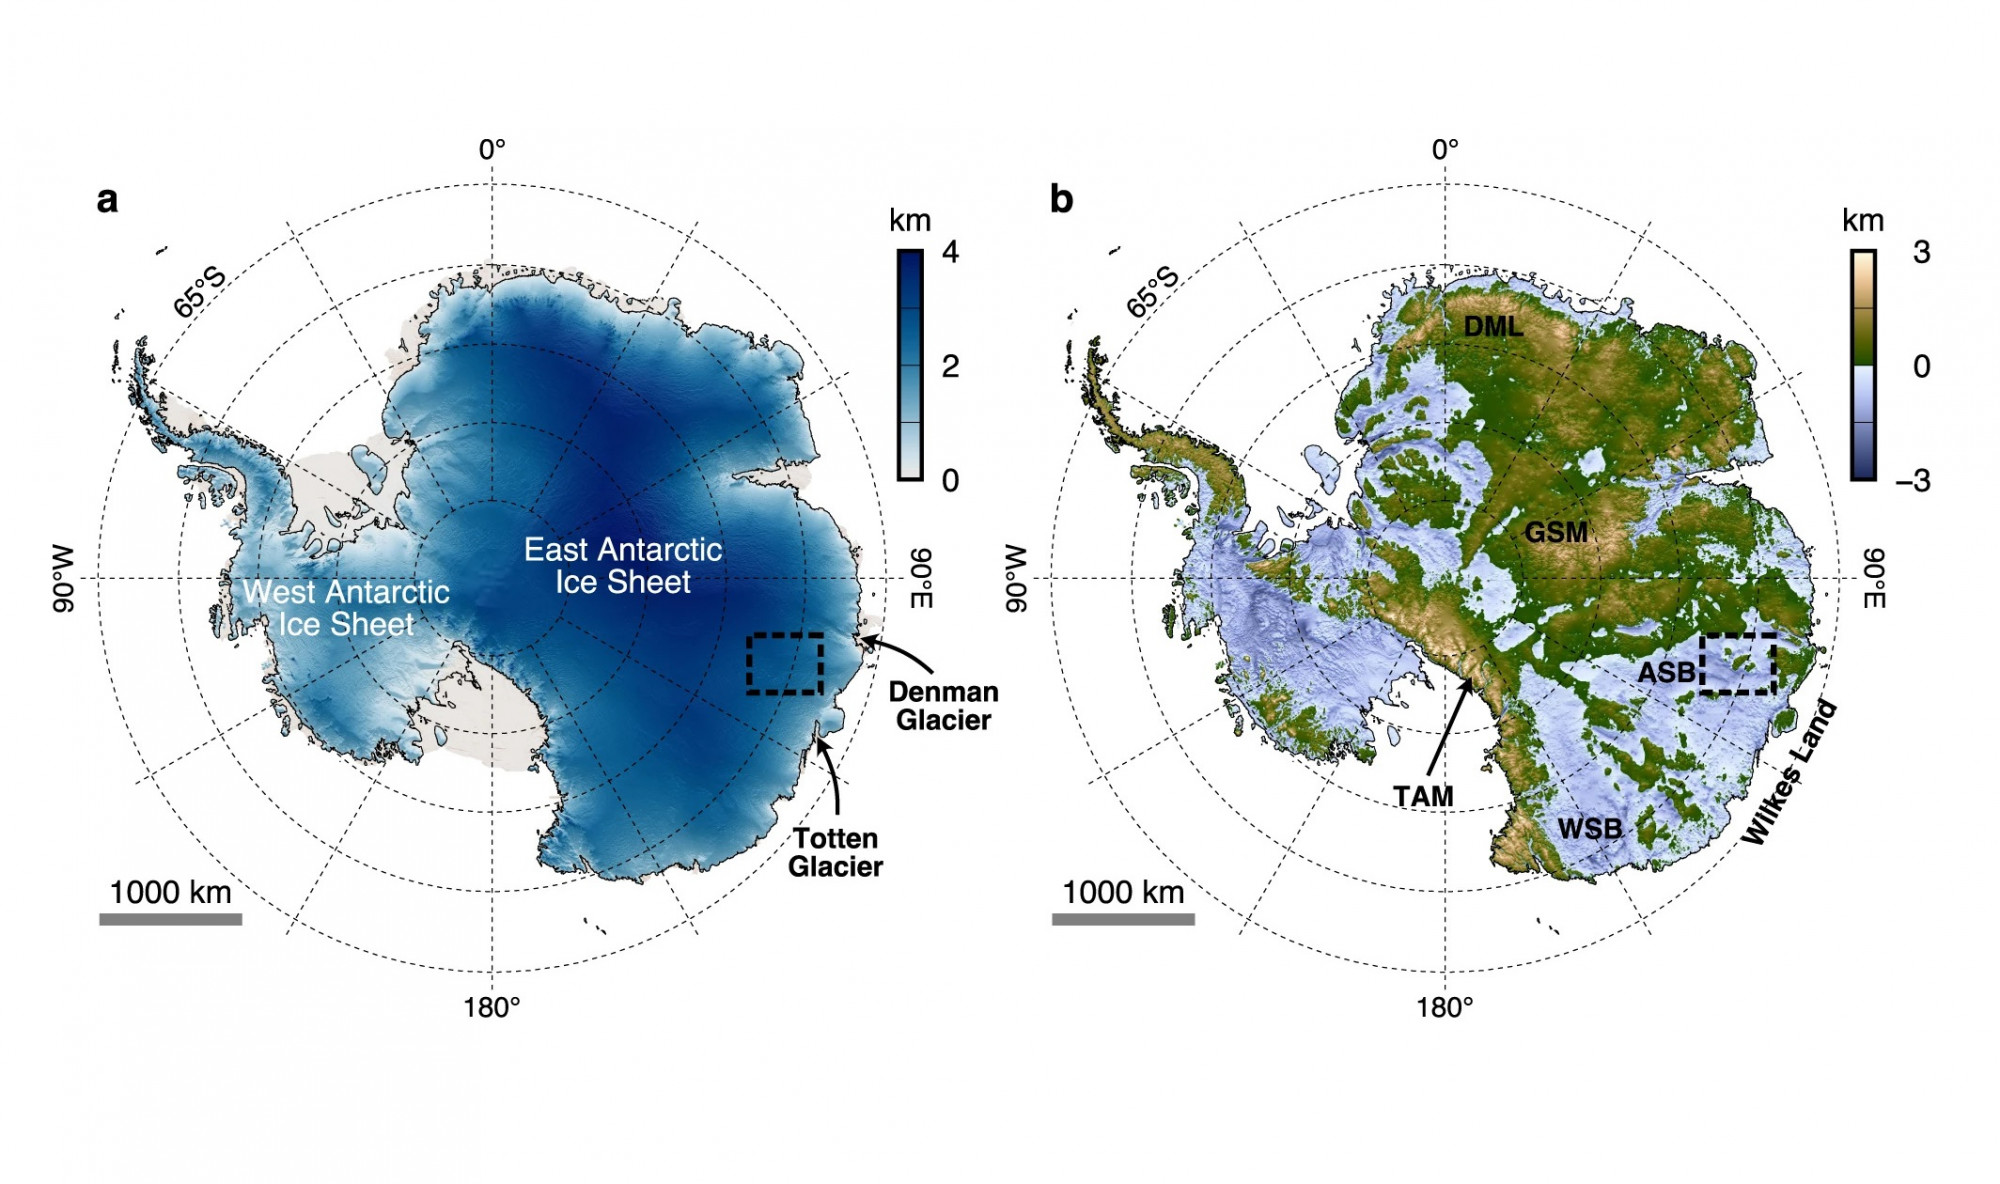 Erdőkben és folyókban gazdag ősi táj nyomaira bukkantak az Antarktisz jege alatt